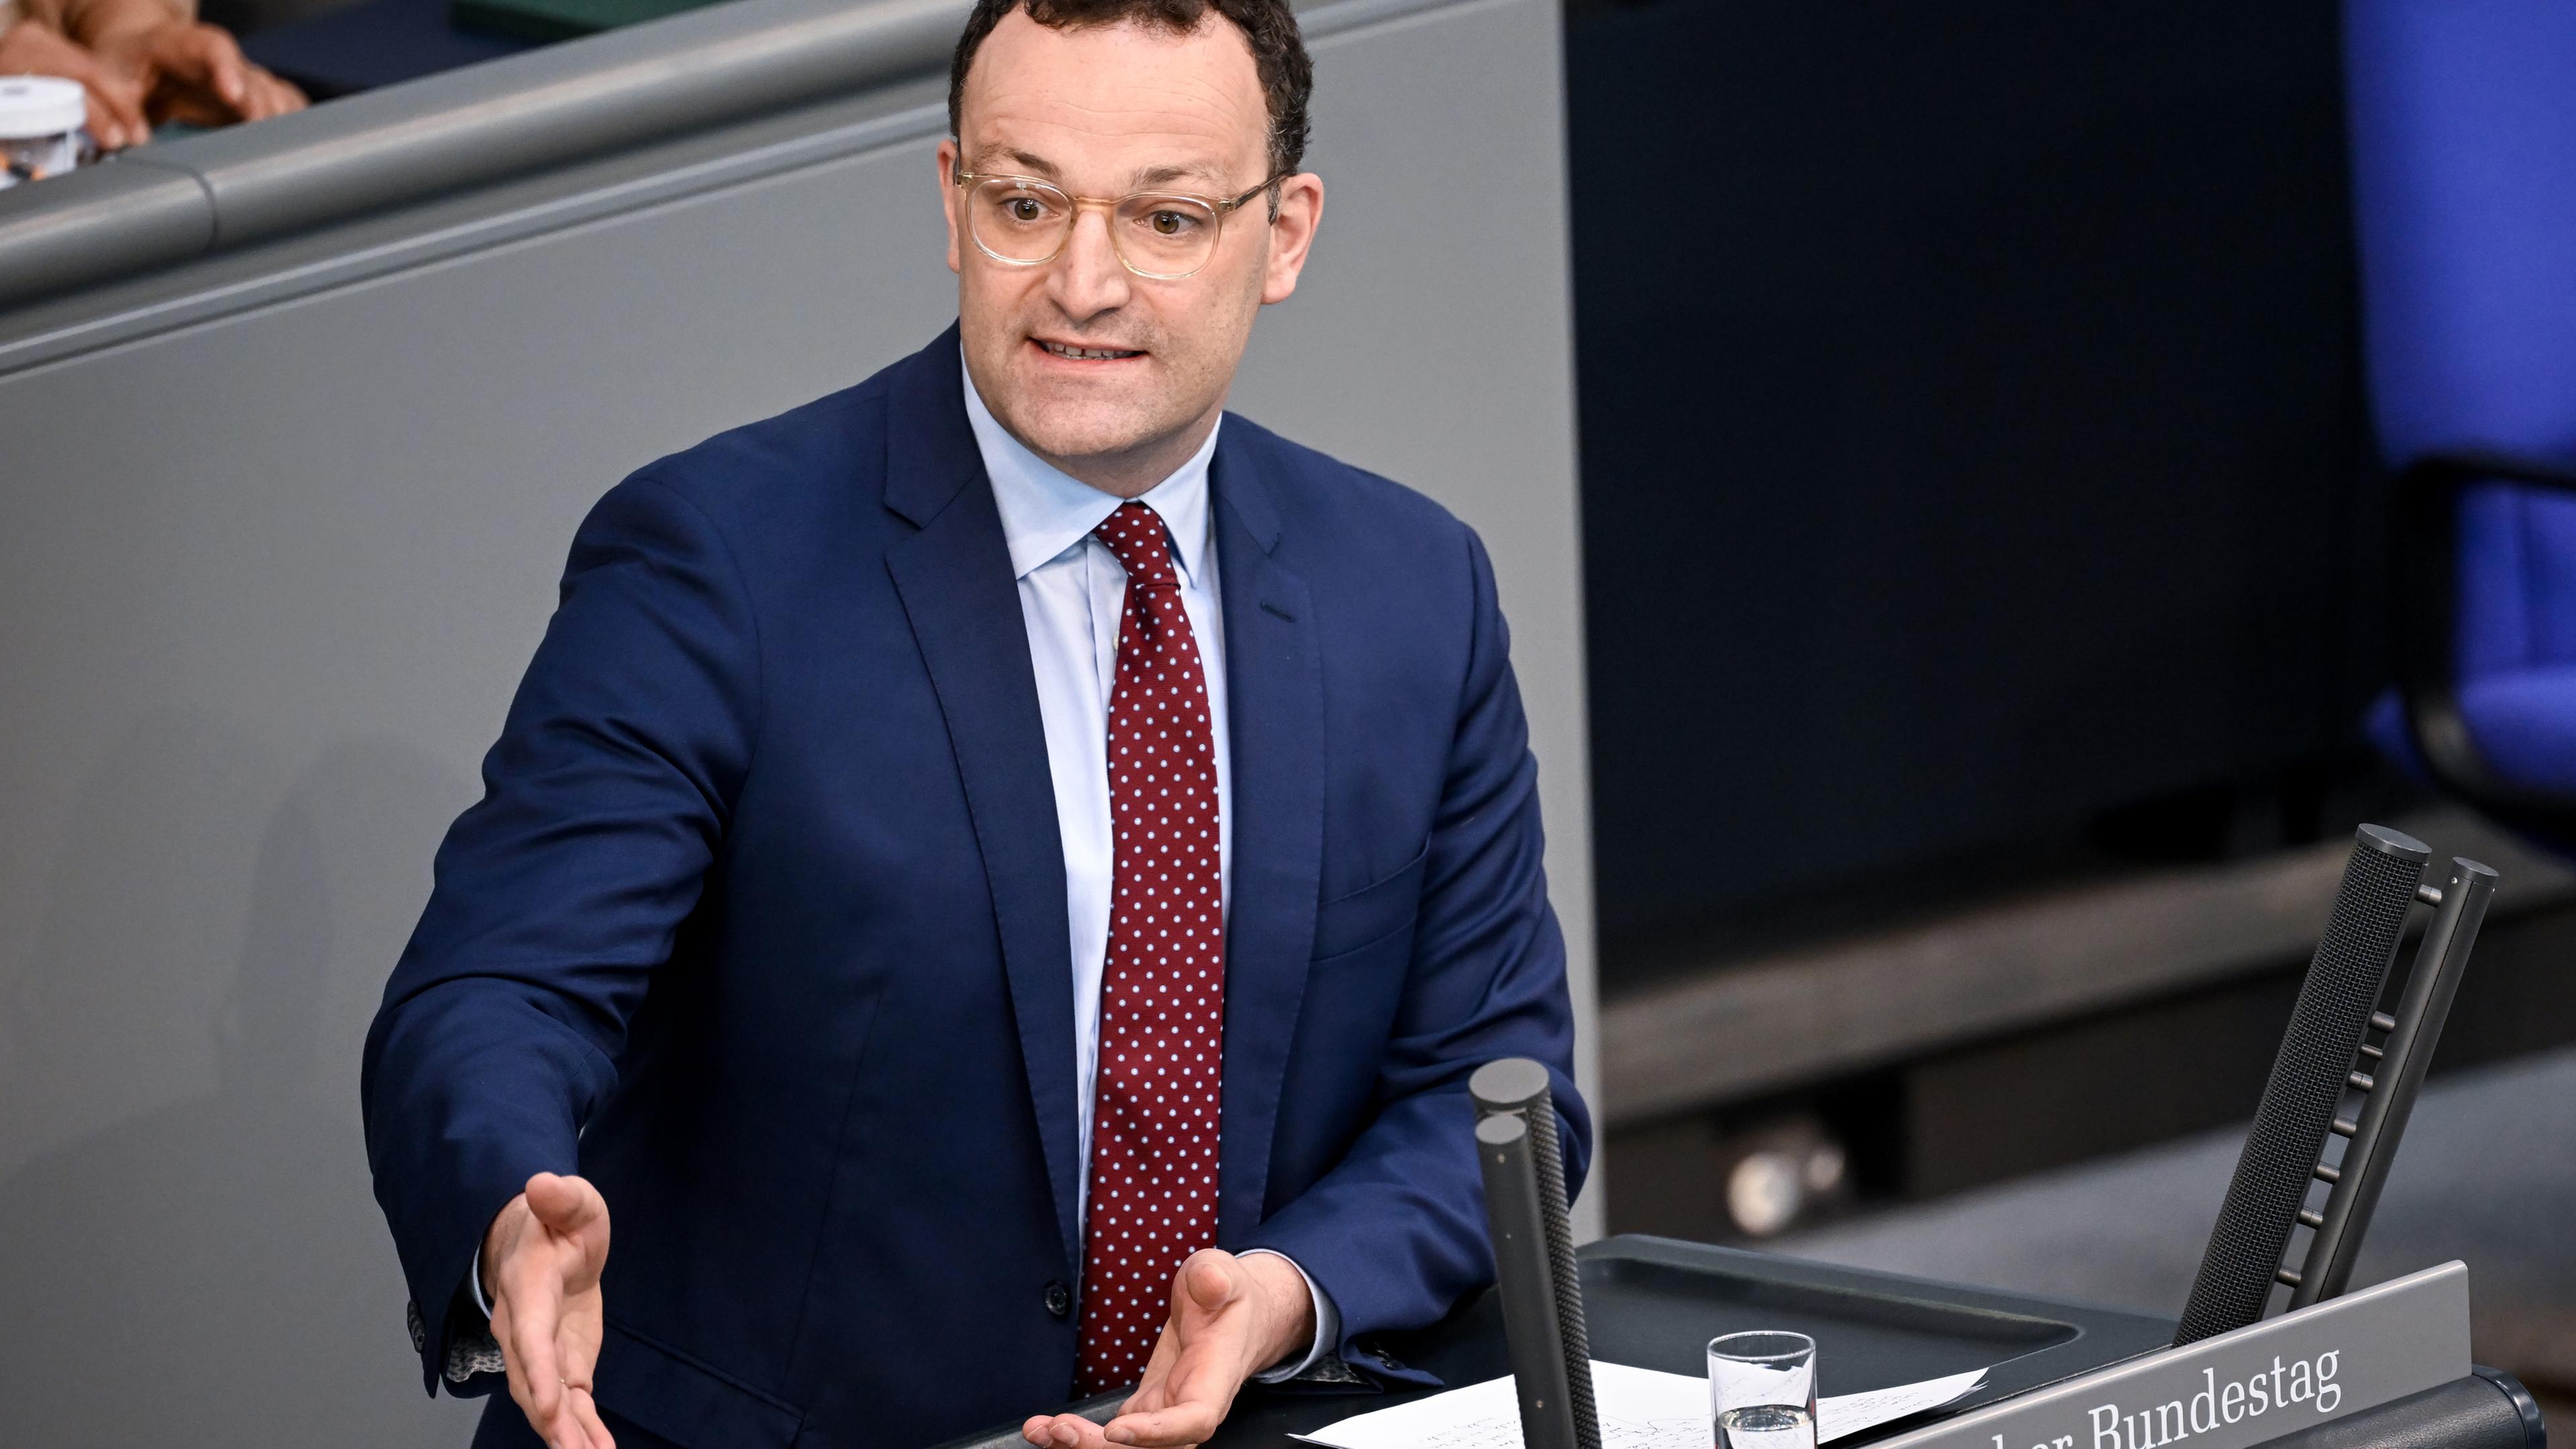 Der stellvertretende Vorsitzende der Unionsfraktion im Bundestag, Jens Spahn, während einer Debatte.